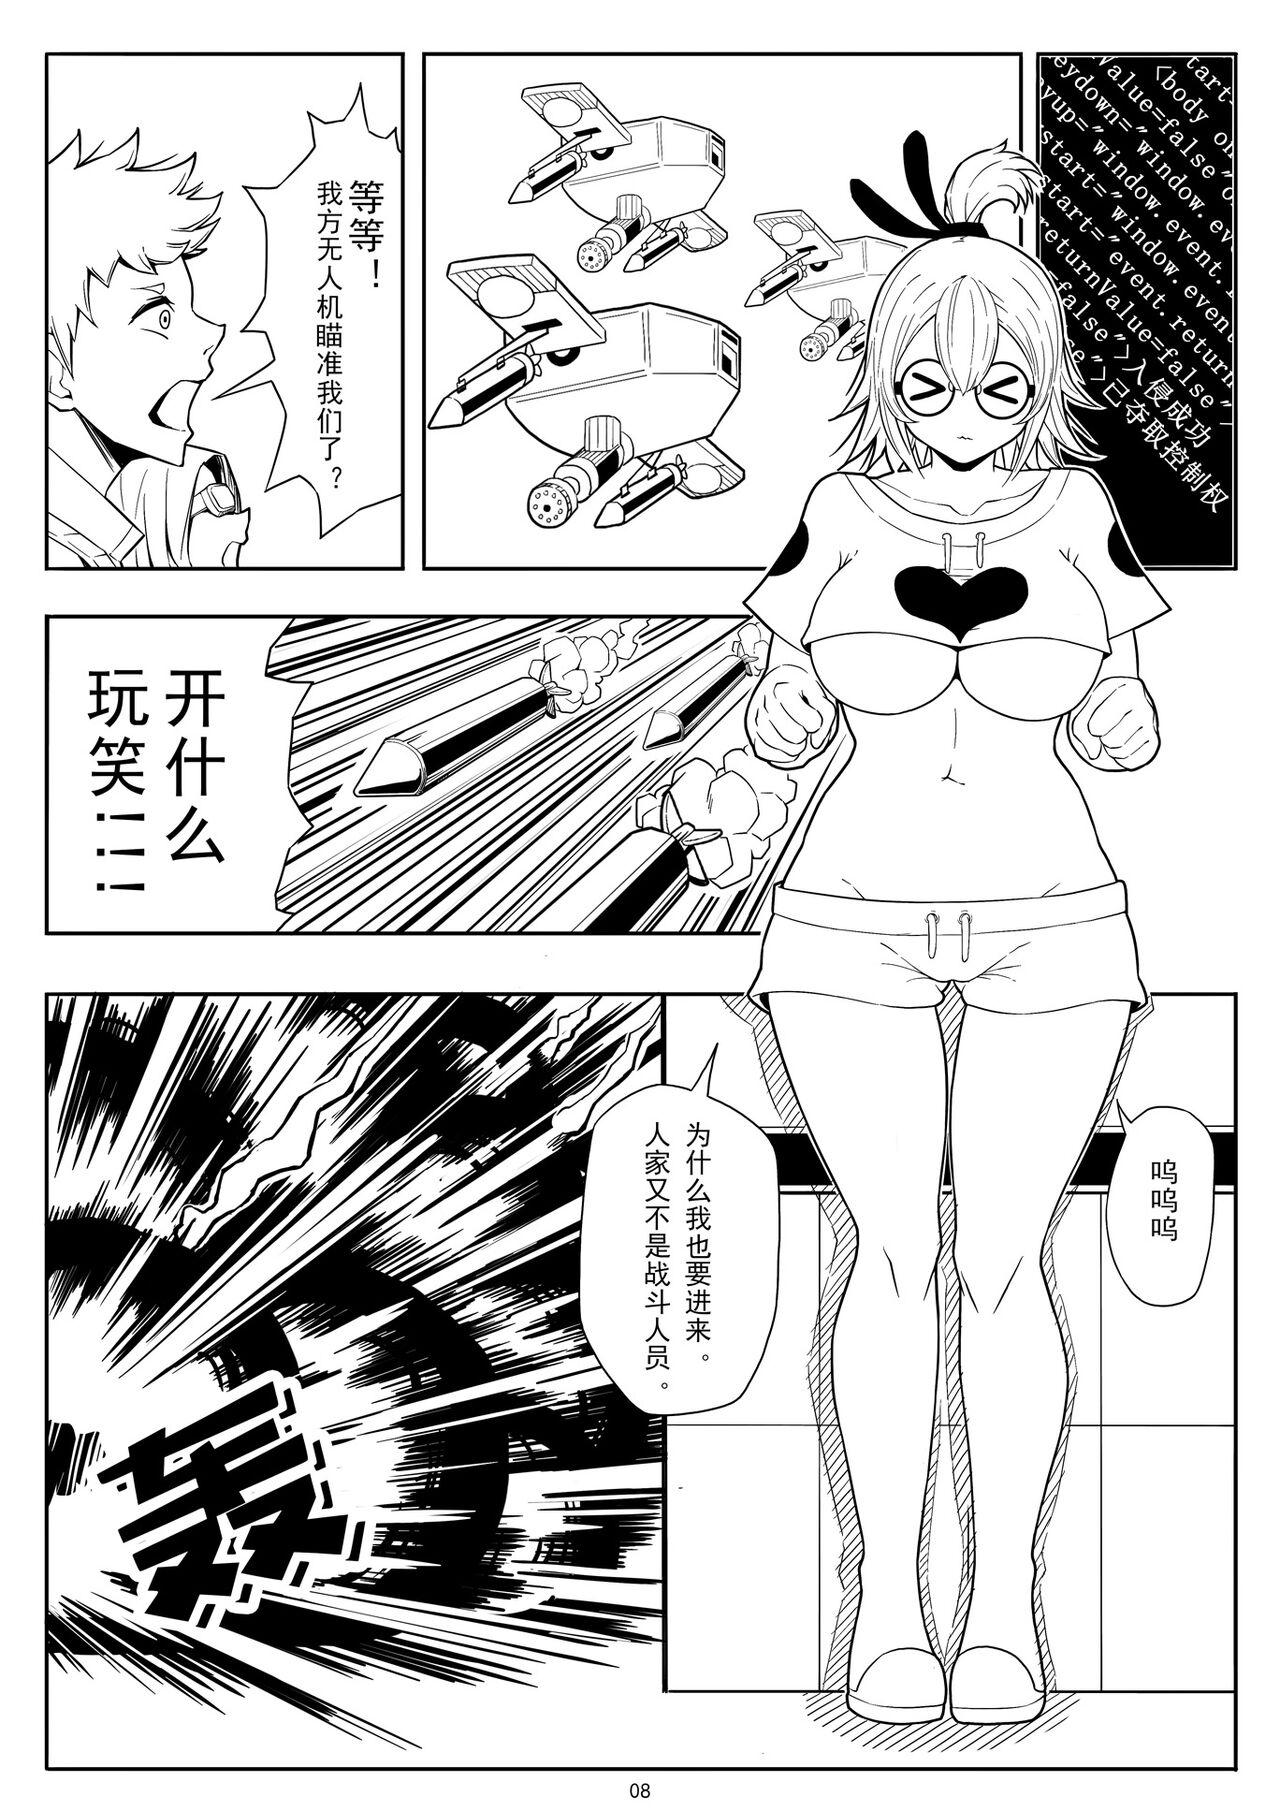 Sex 奴隶特工队·常规任务01 - Original Jap - Page 11